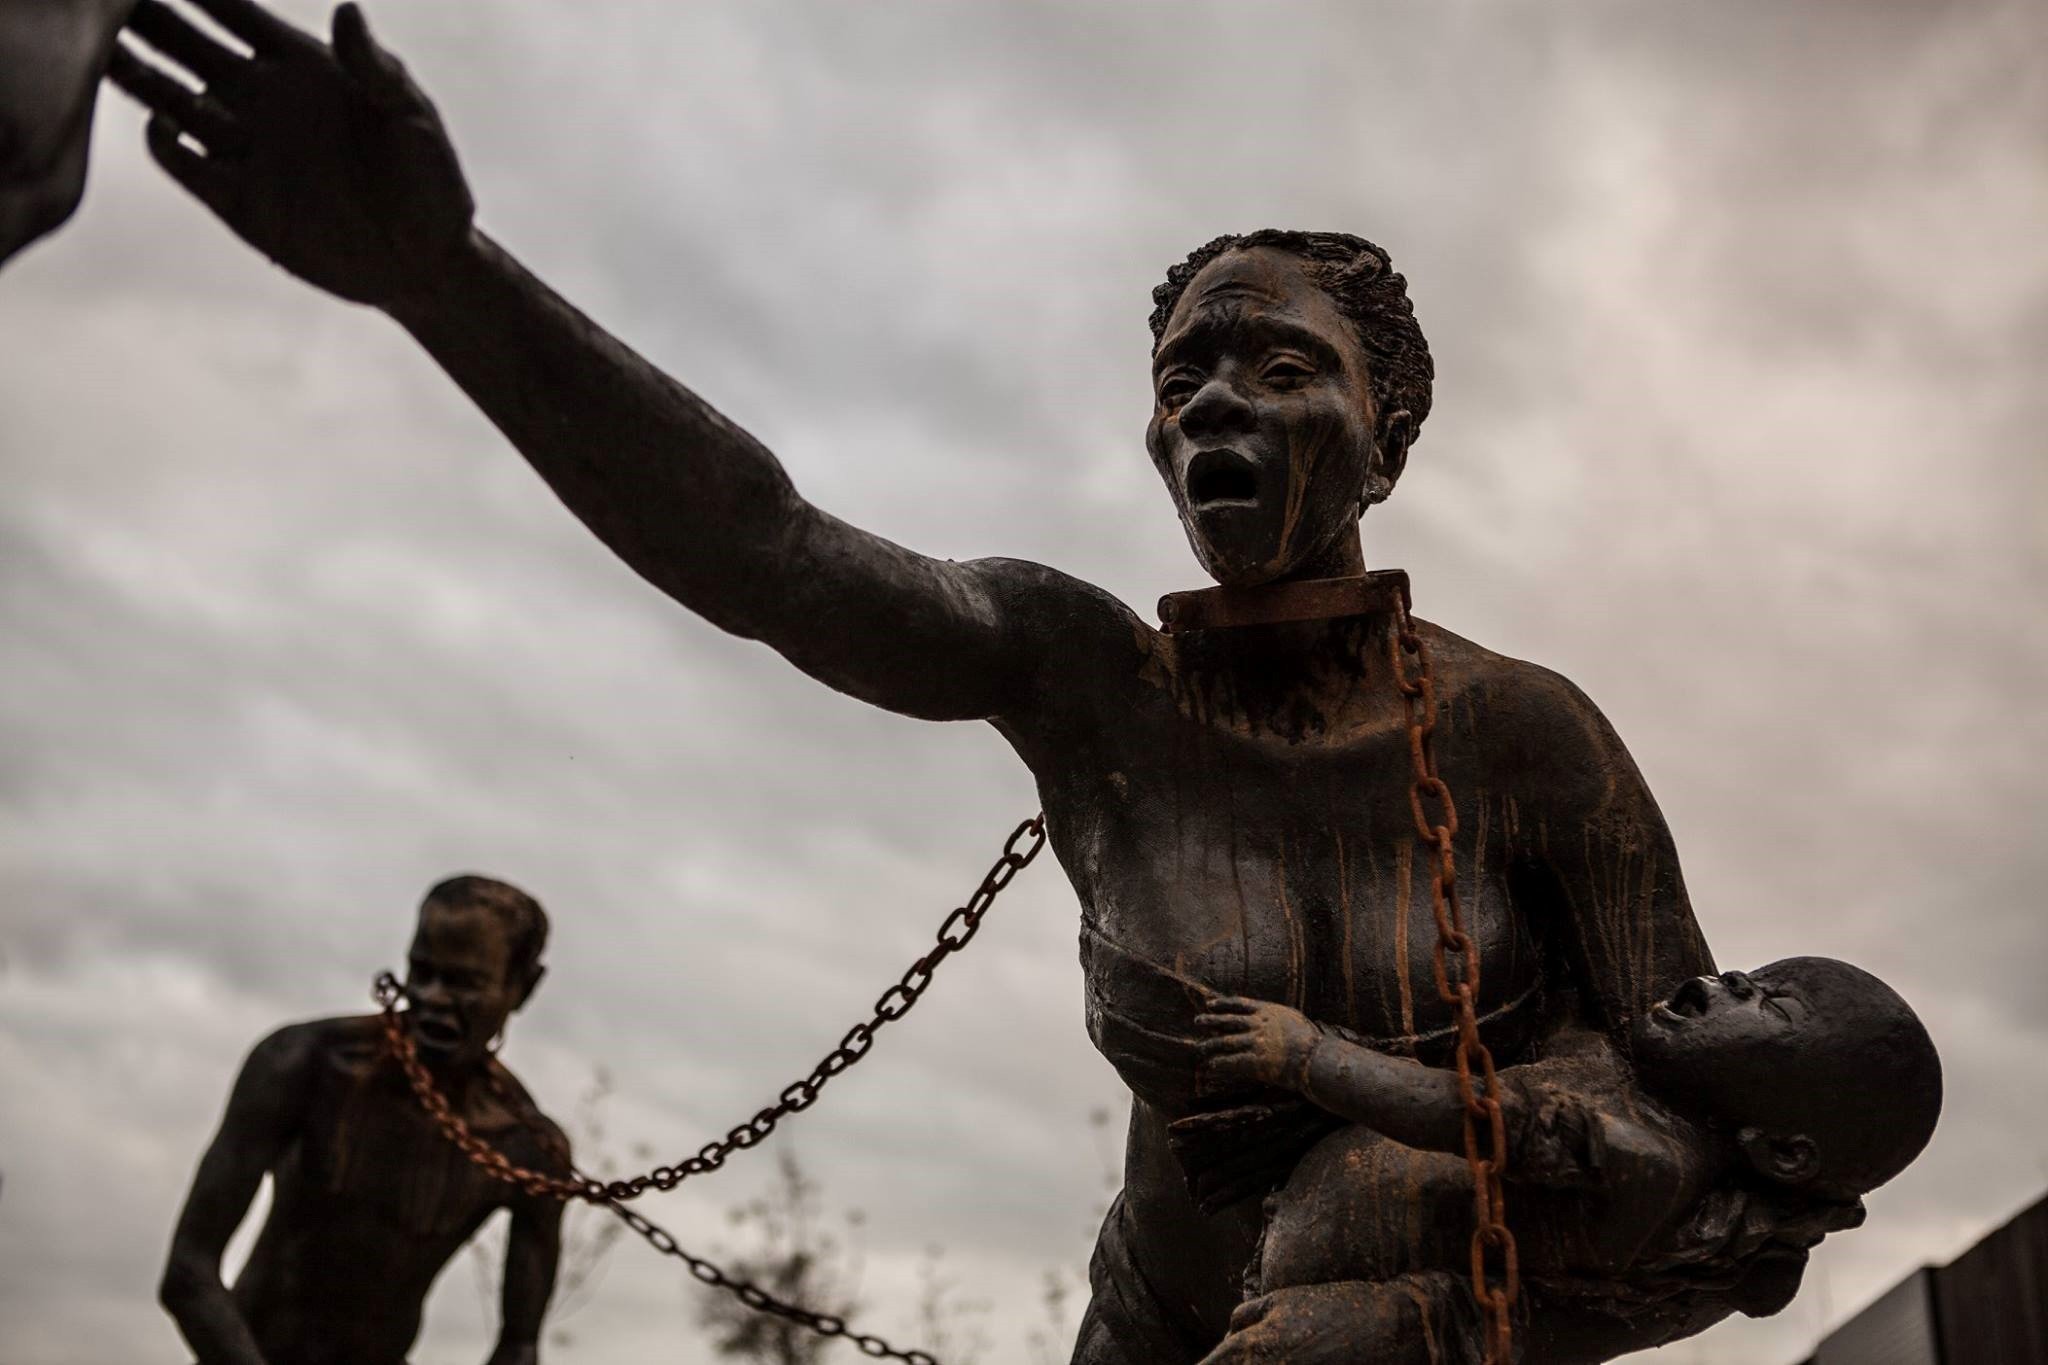 En mémoire aux 4 400 Afro-Américains morts lynchés entre 1877 et 1950, un Mémorial voit le jour dans l'Alabama ! Par Pauline M. (+Vidéo sur Bidfoly.com)                          30708059_10155968441040845_8029316389208588288_o